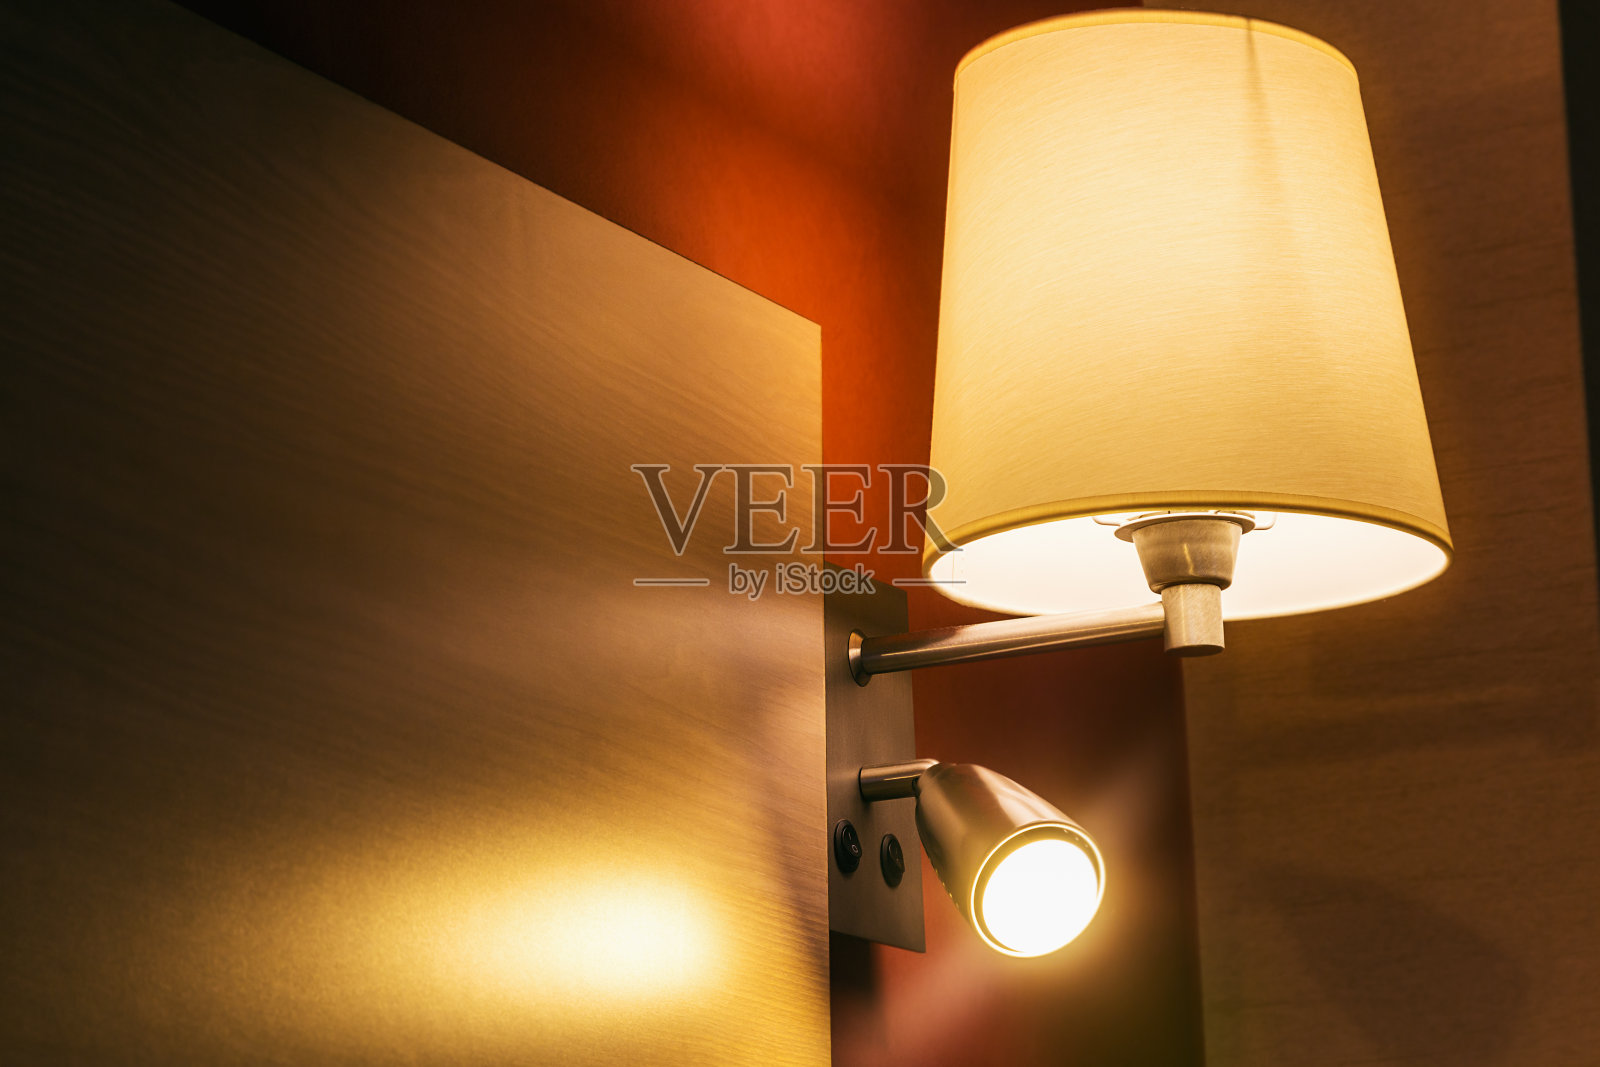 房间或旅馆房间床上的壁灯照片摄影图片